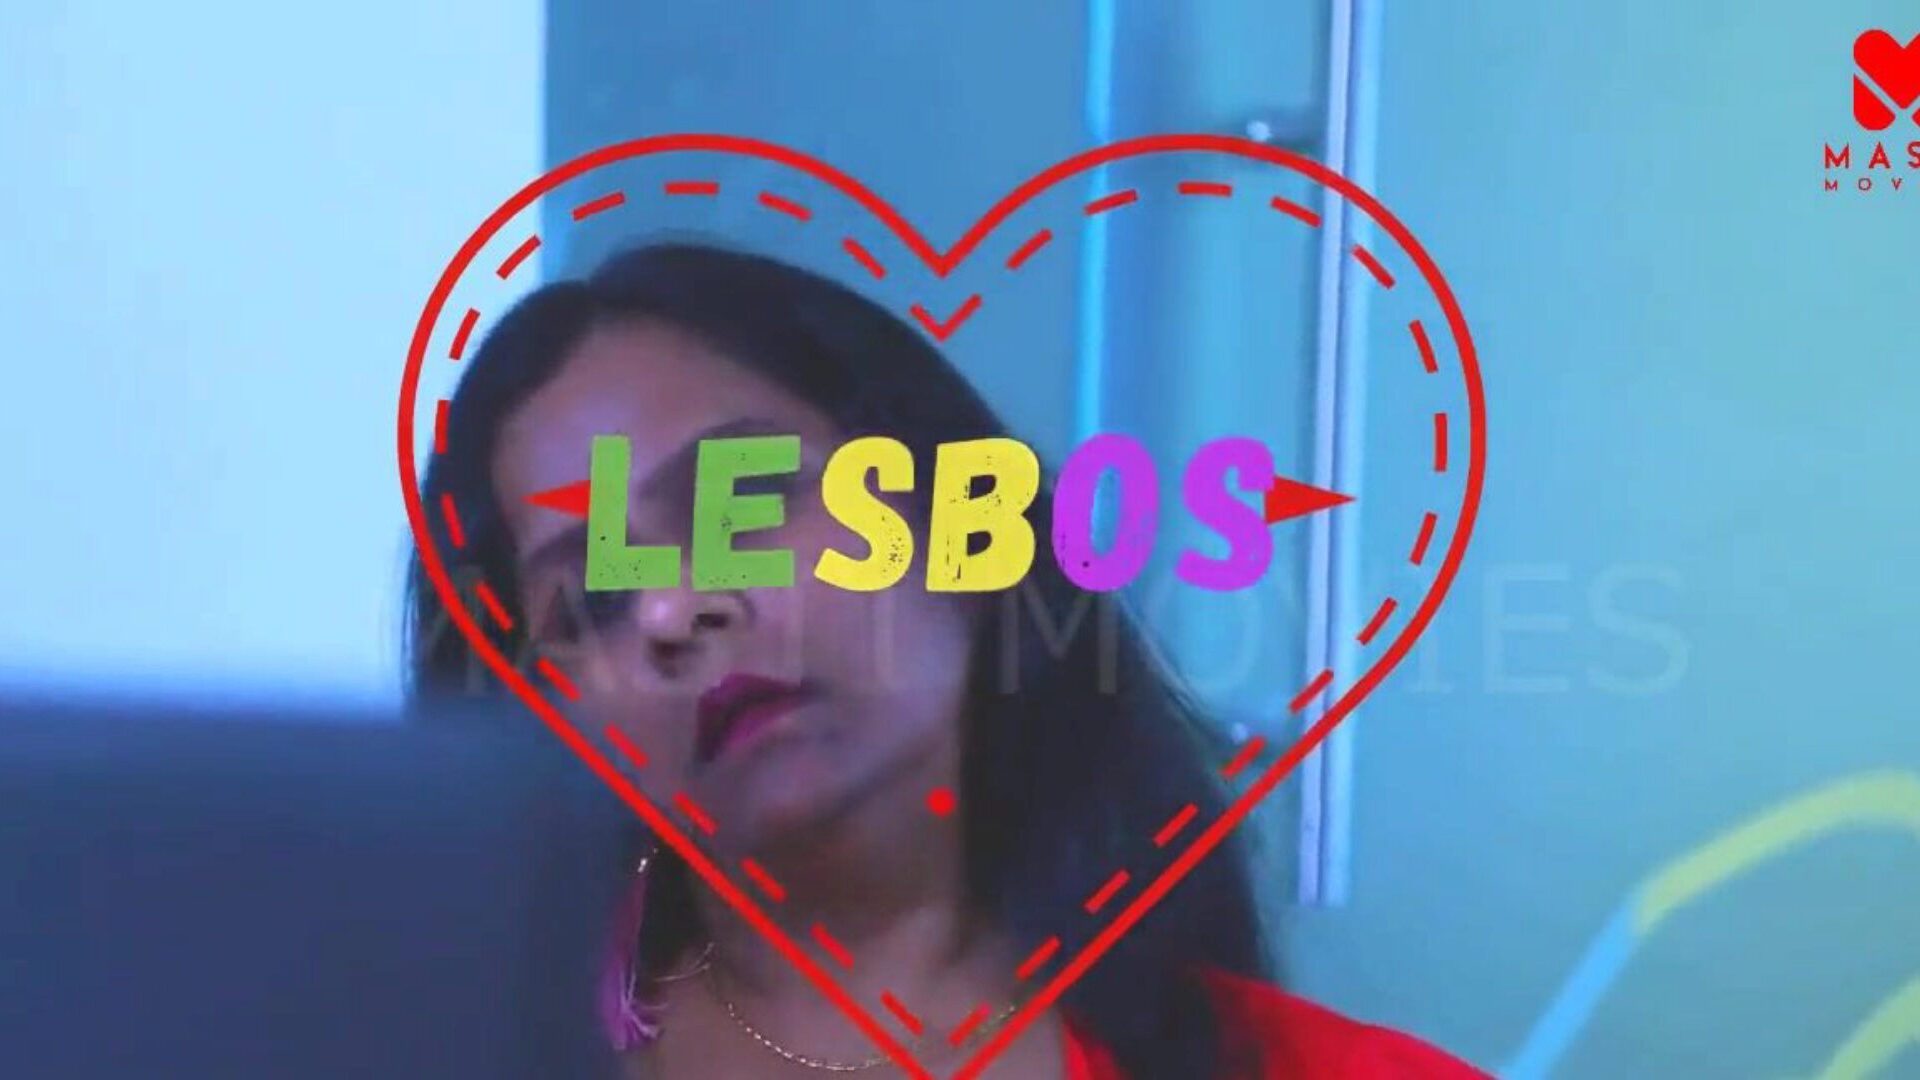 lesbos (2020) oklassificerad 720p hevc hdrip mastimovies canada sf mogna stora tuttar mostrar het lesbisk samlag